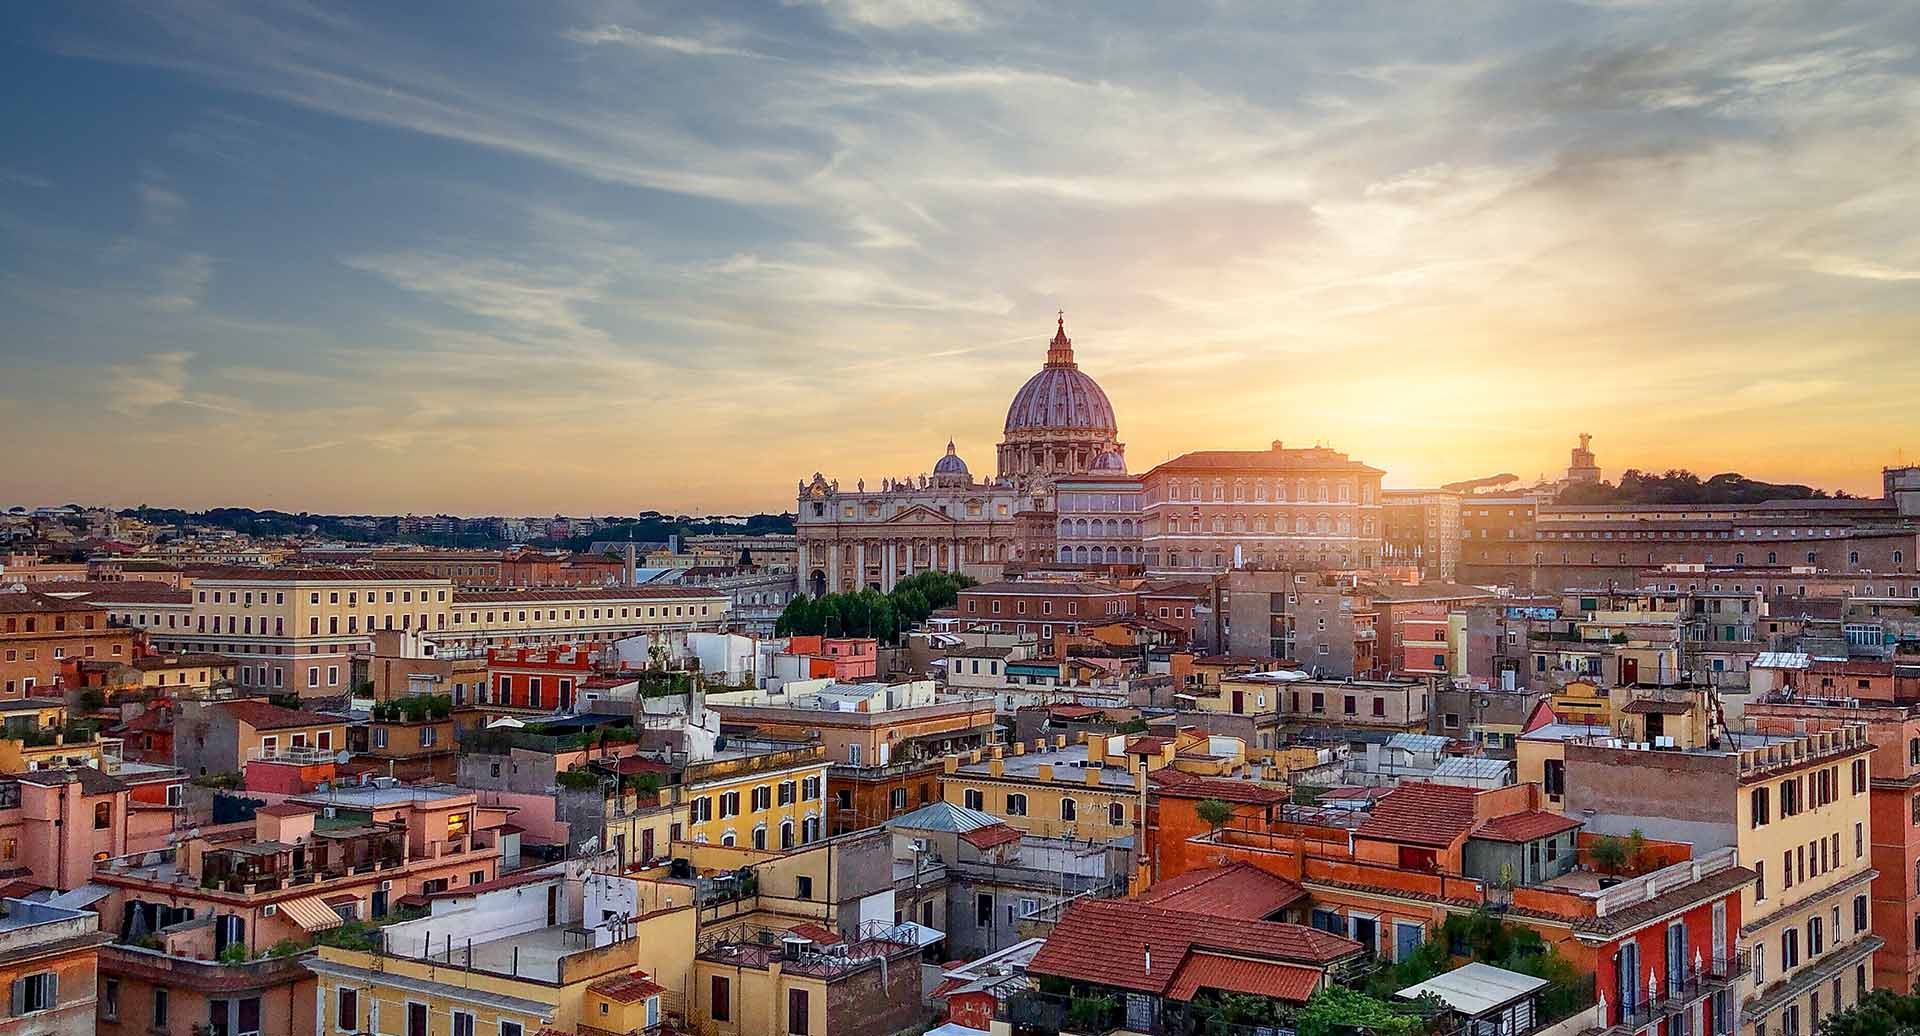 Immagine aerea della città di Roma. In primo piano abbiamo vari edifici residenziali e sullo sfondo vari monumenti della città di Roma con dietro il tramonto.